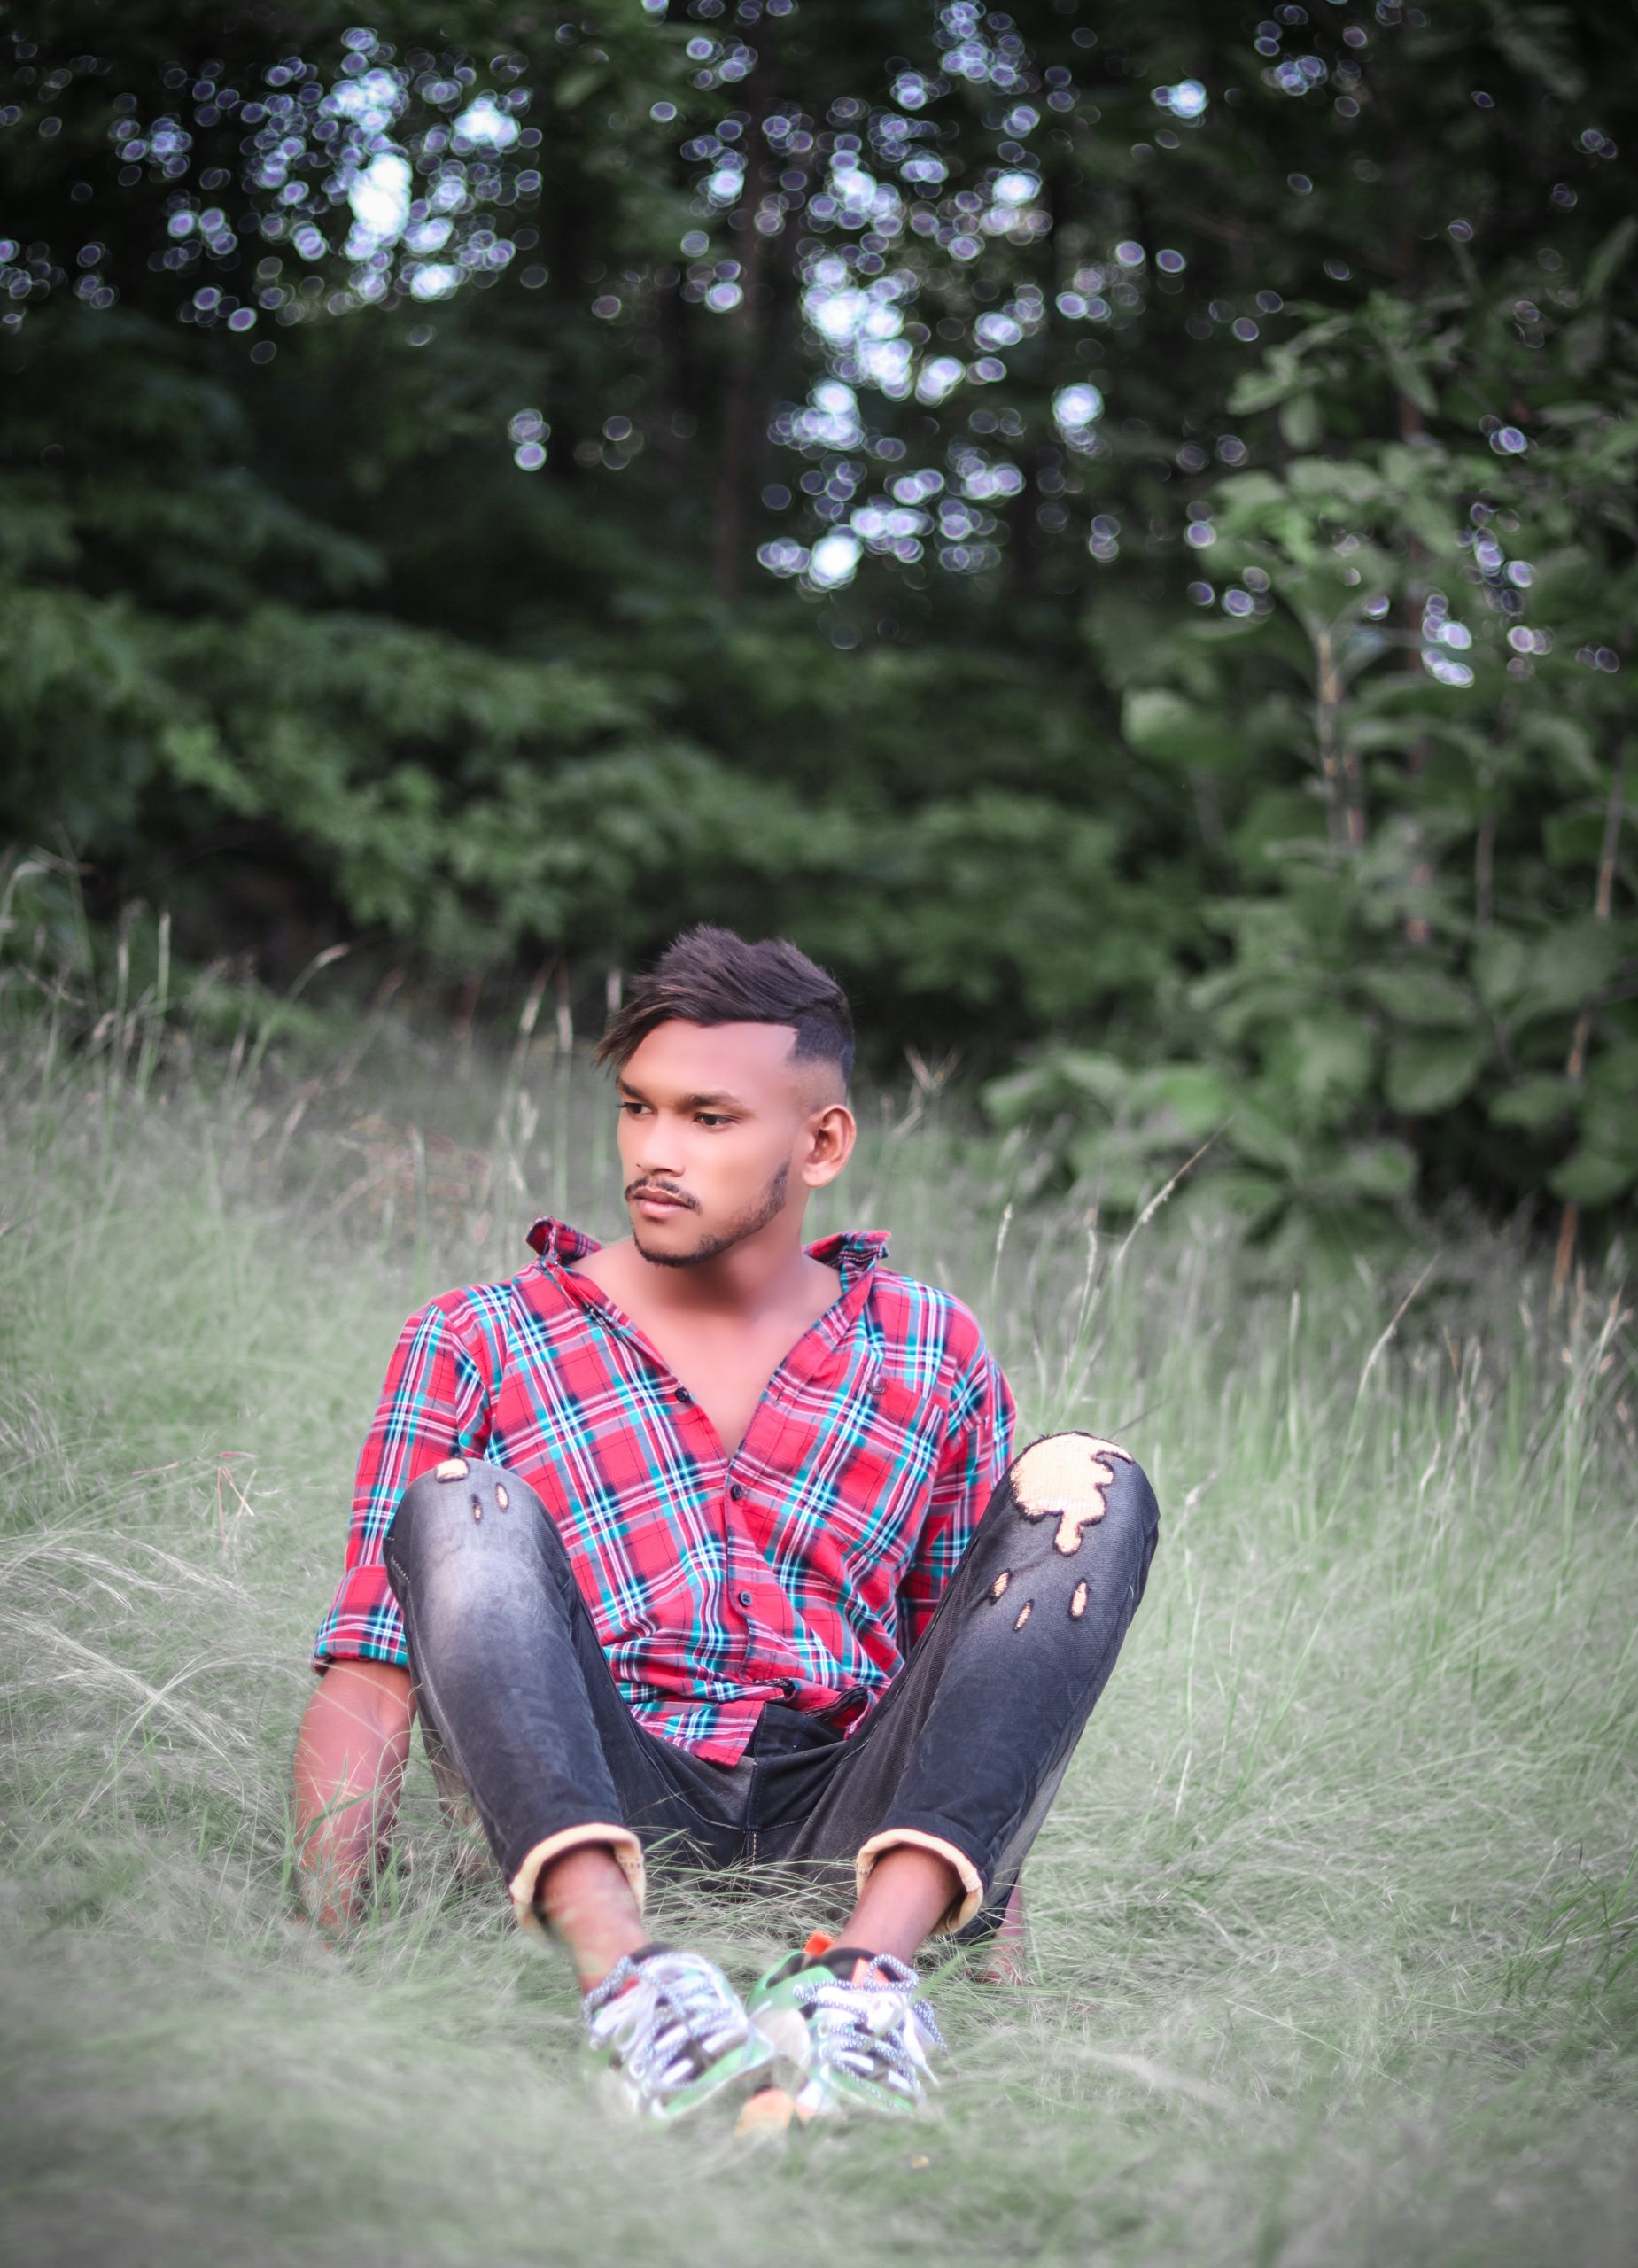 A boy sitting on grass